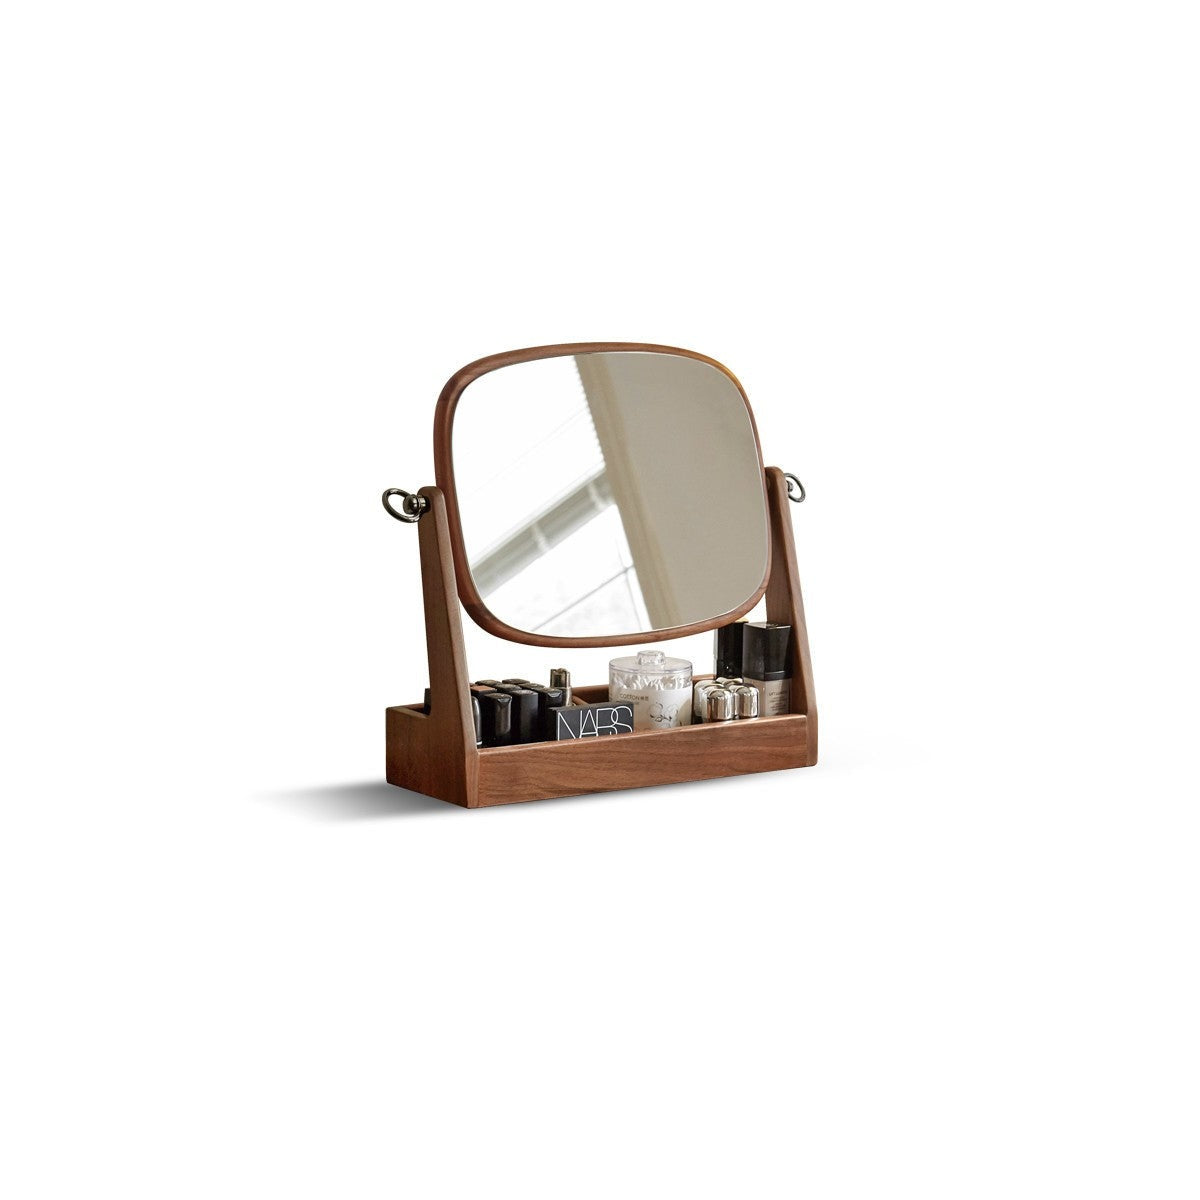 Black walnut solid wood makeup mirror storage box degree rotation*